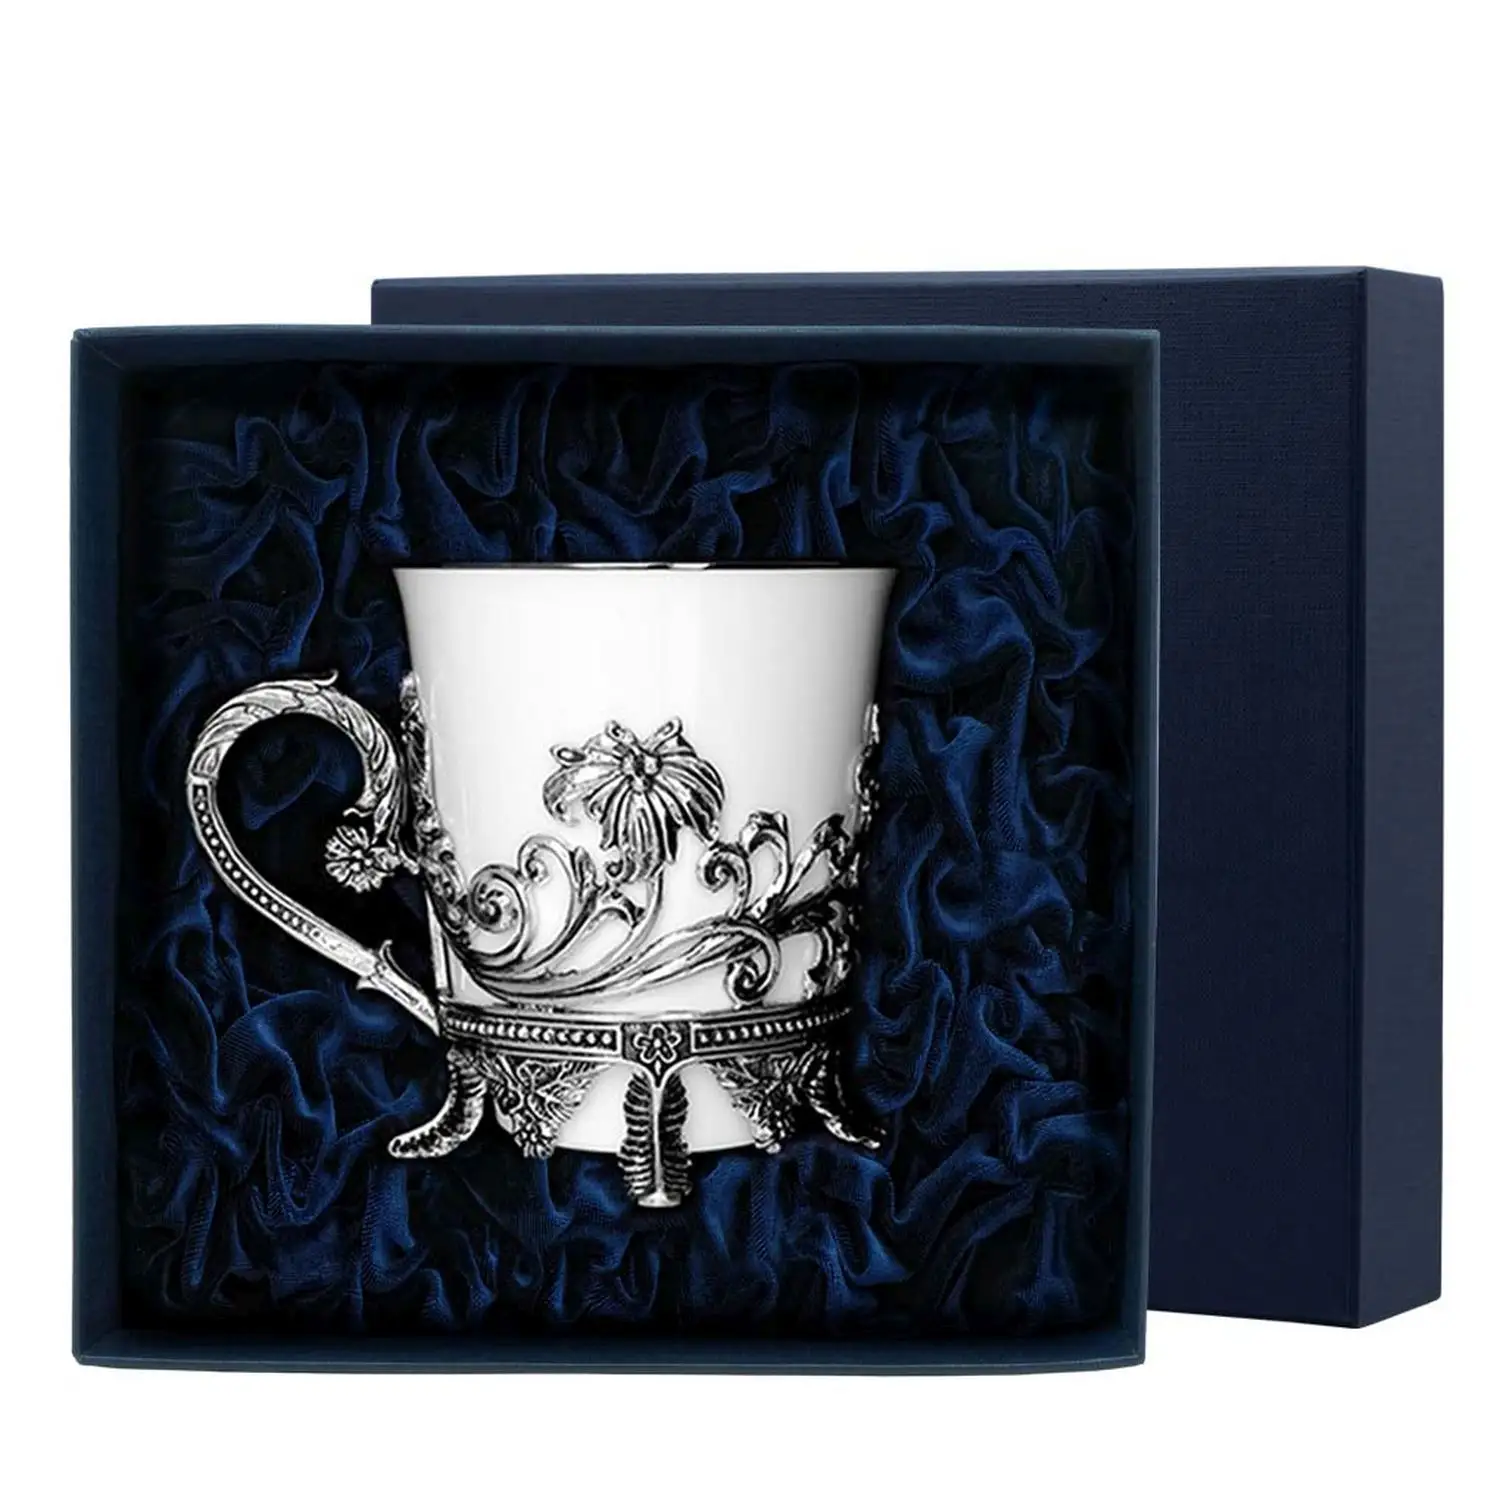 Чашка чайная Цветочная с чернением (Серебро 925) чашка чайная натюрморт с чернением серебро 925